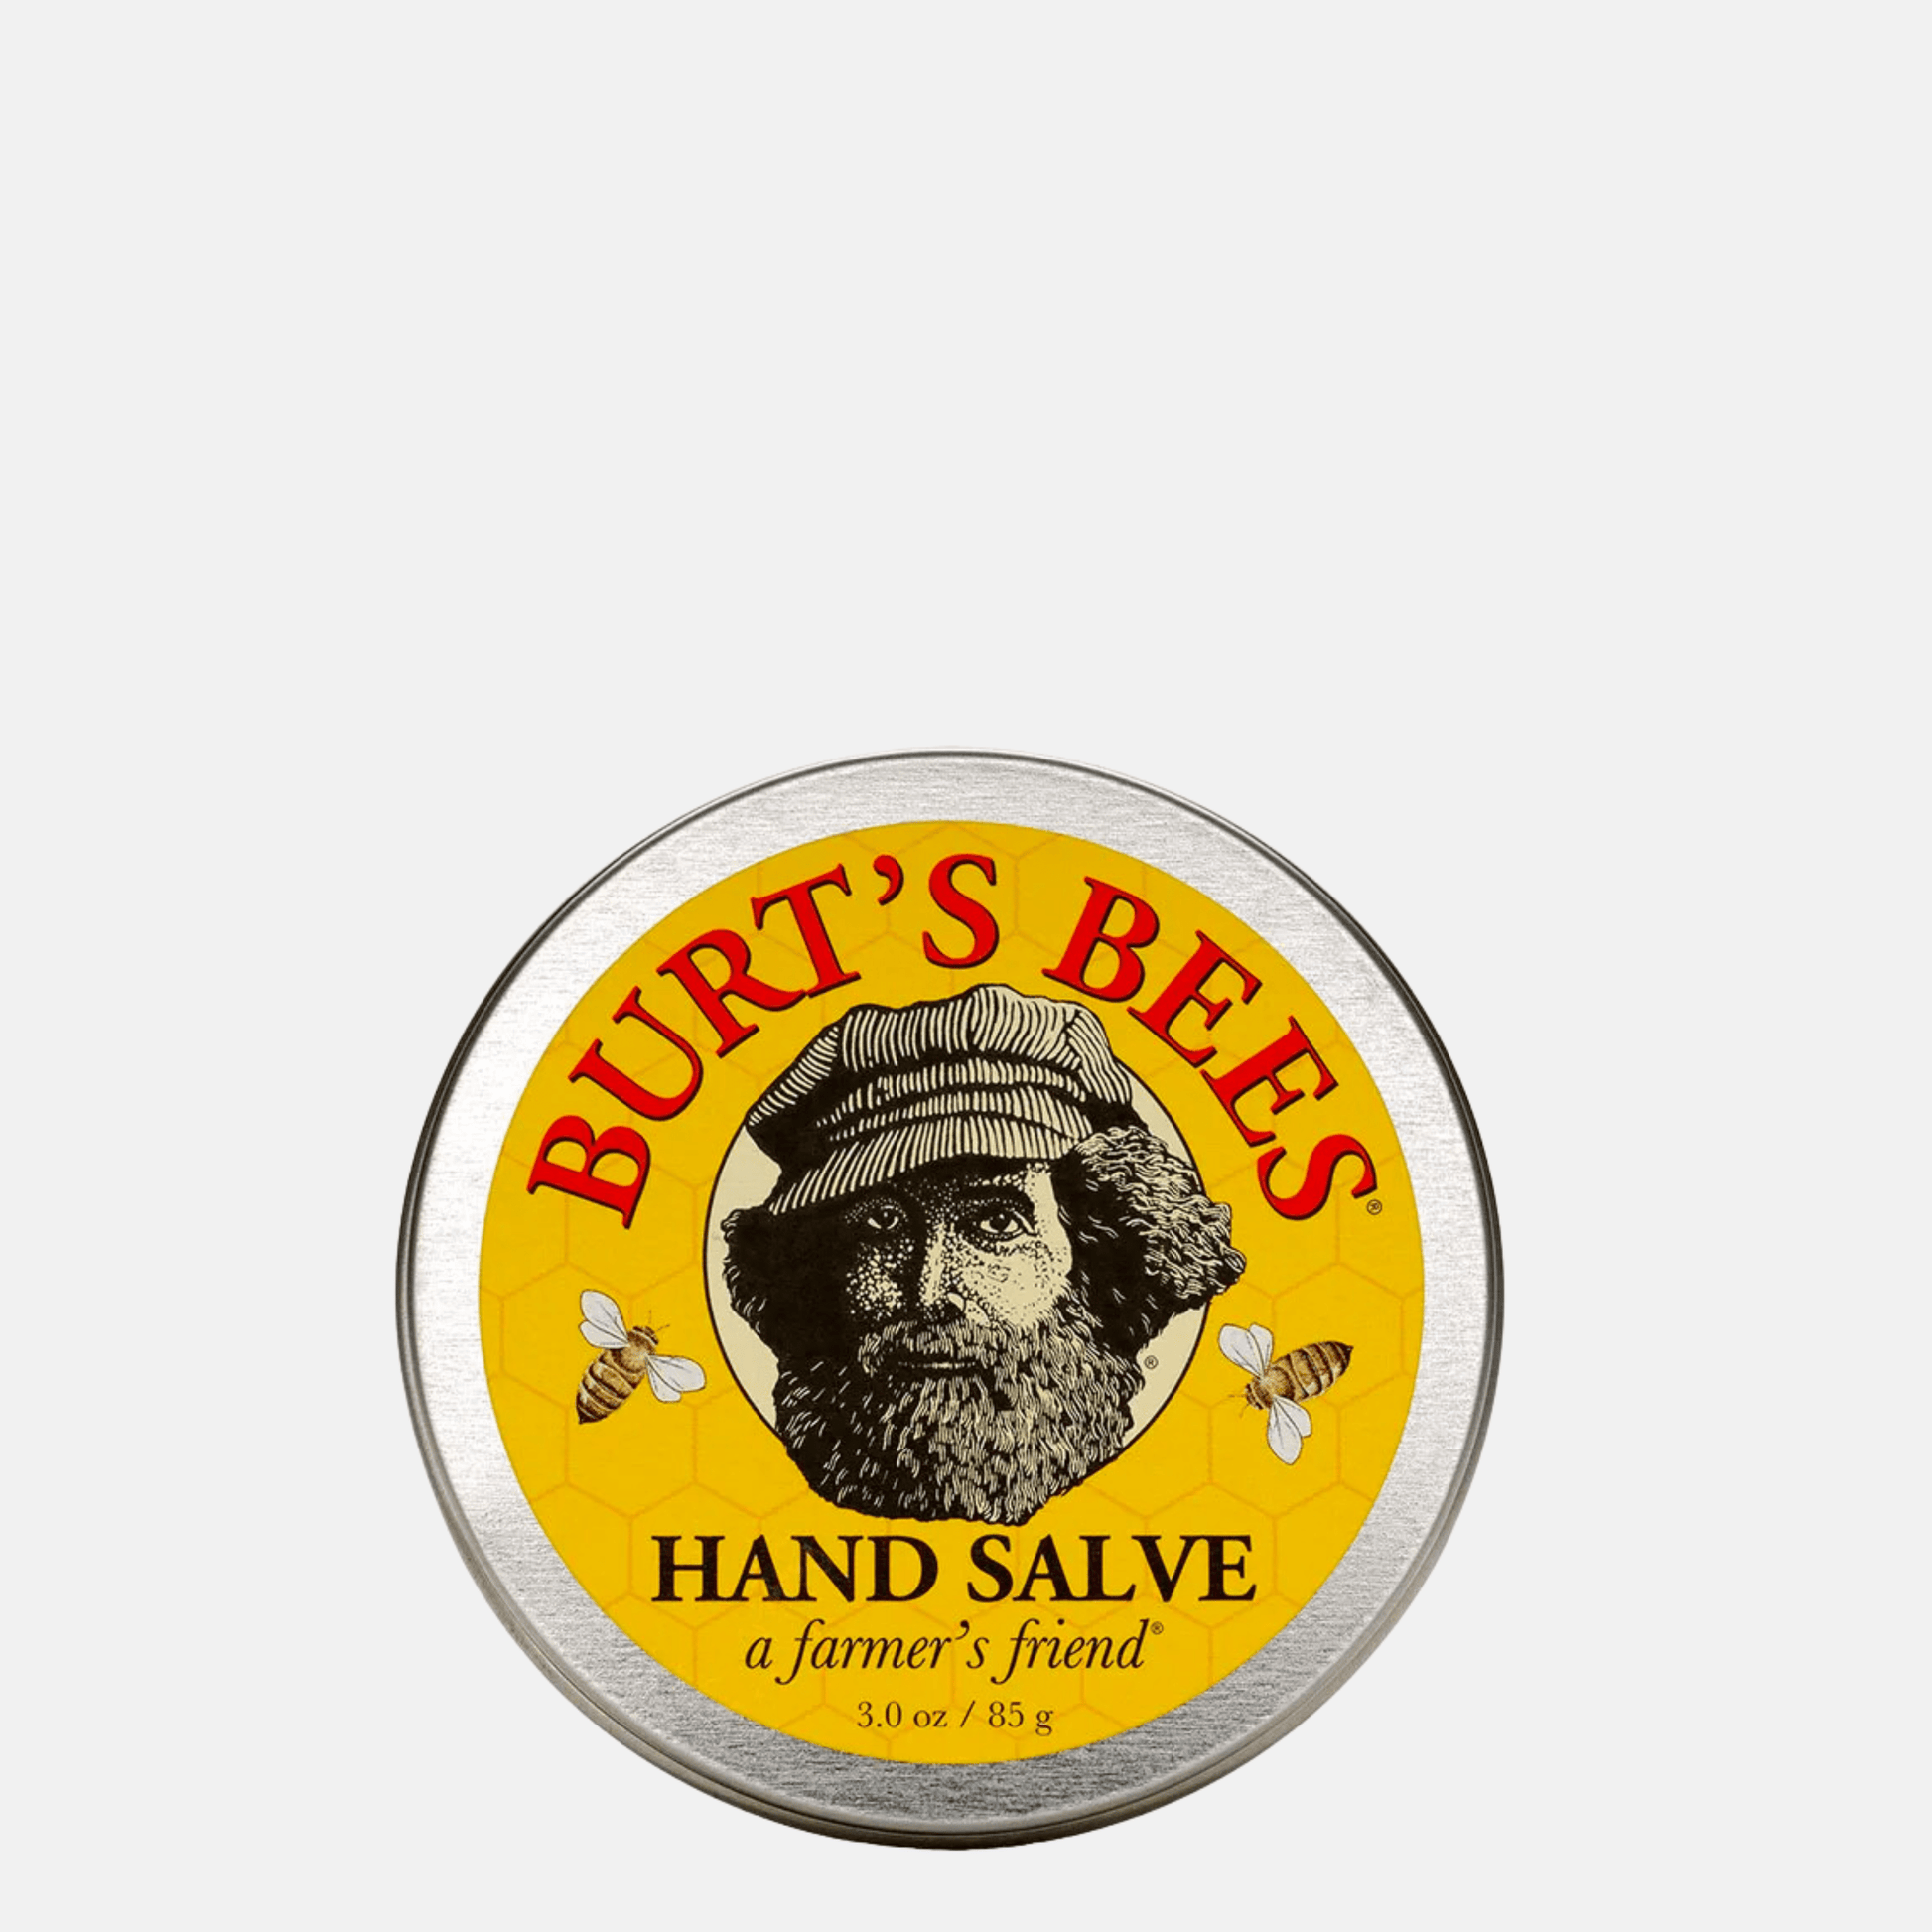 Burt's Bees Hand Salve - Shop BirdieBox